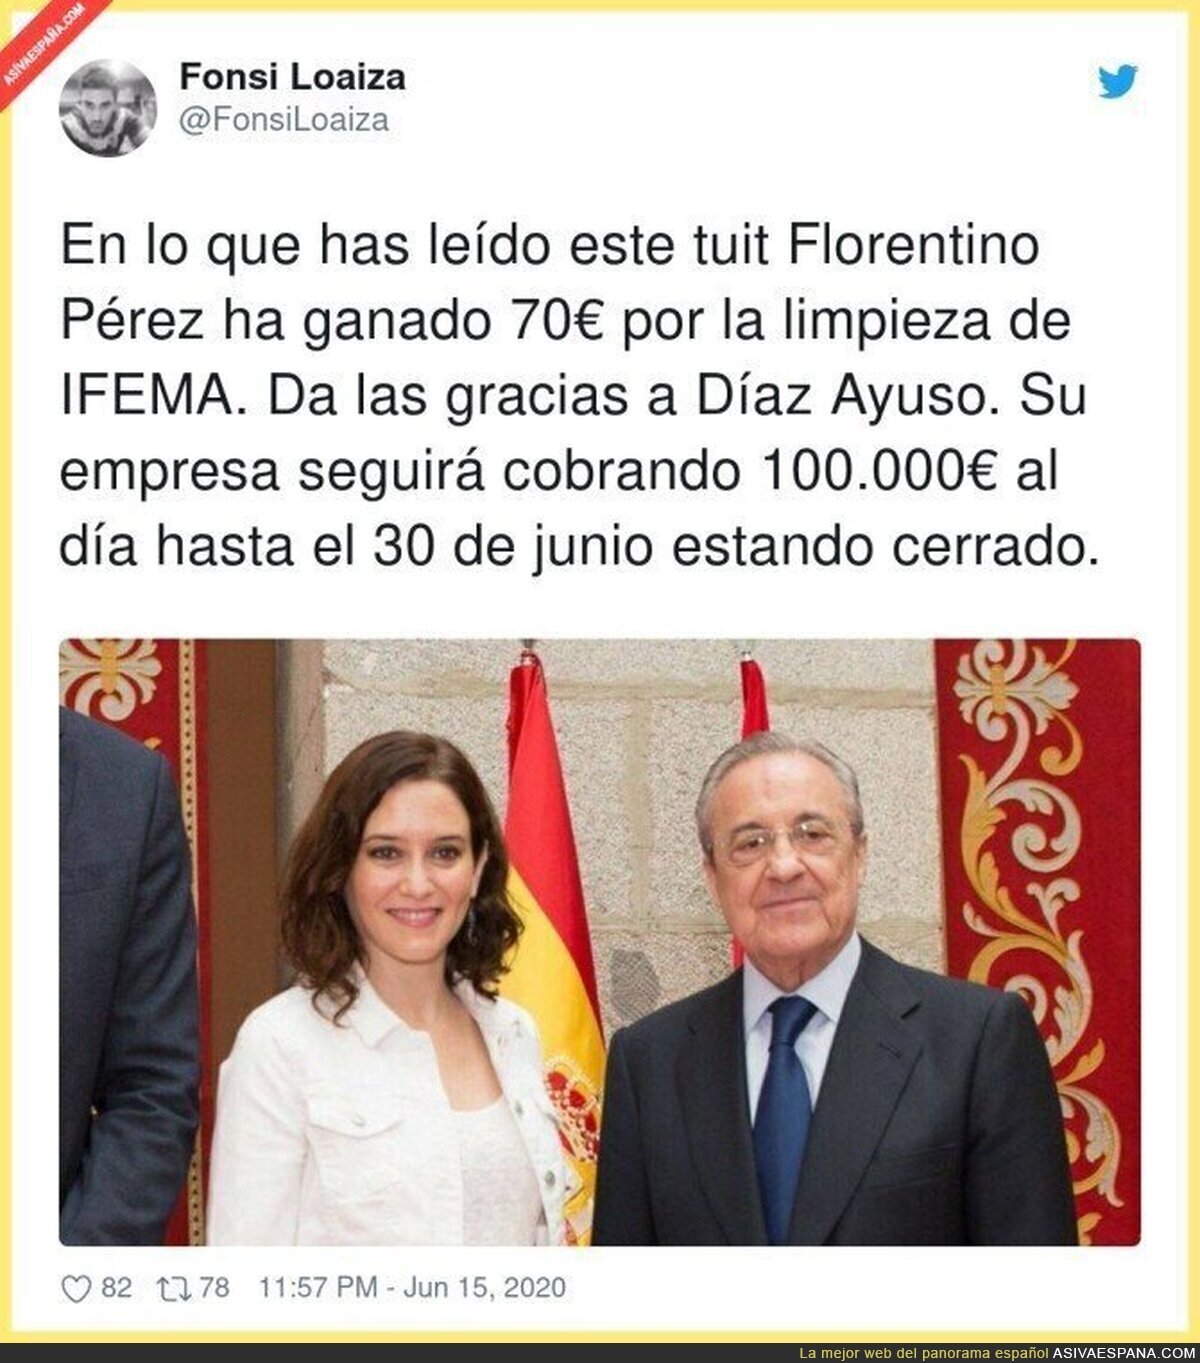 El gran pelotazo de Florentino Pérez